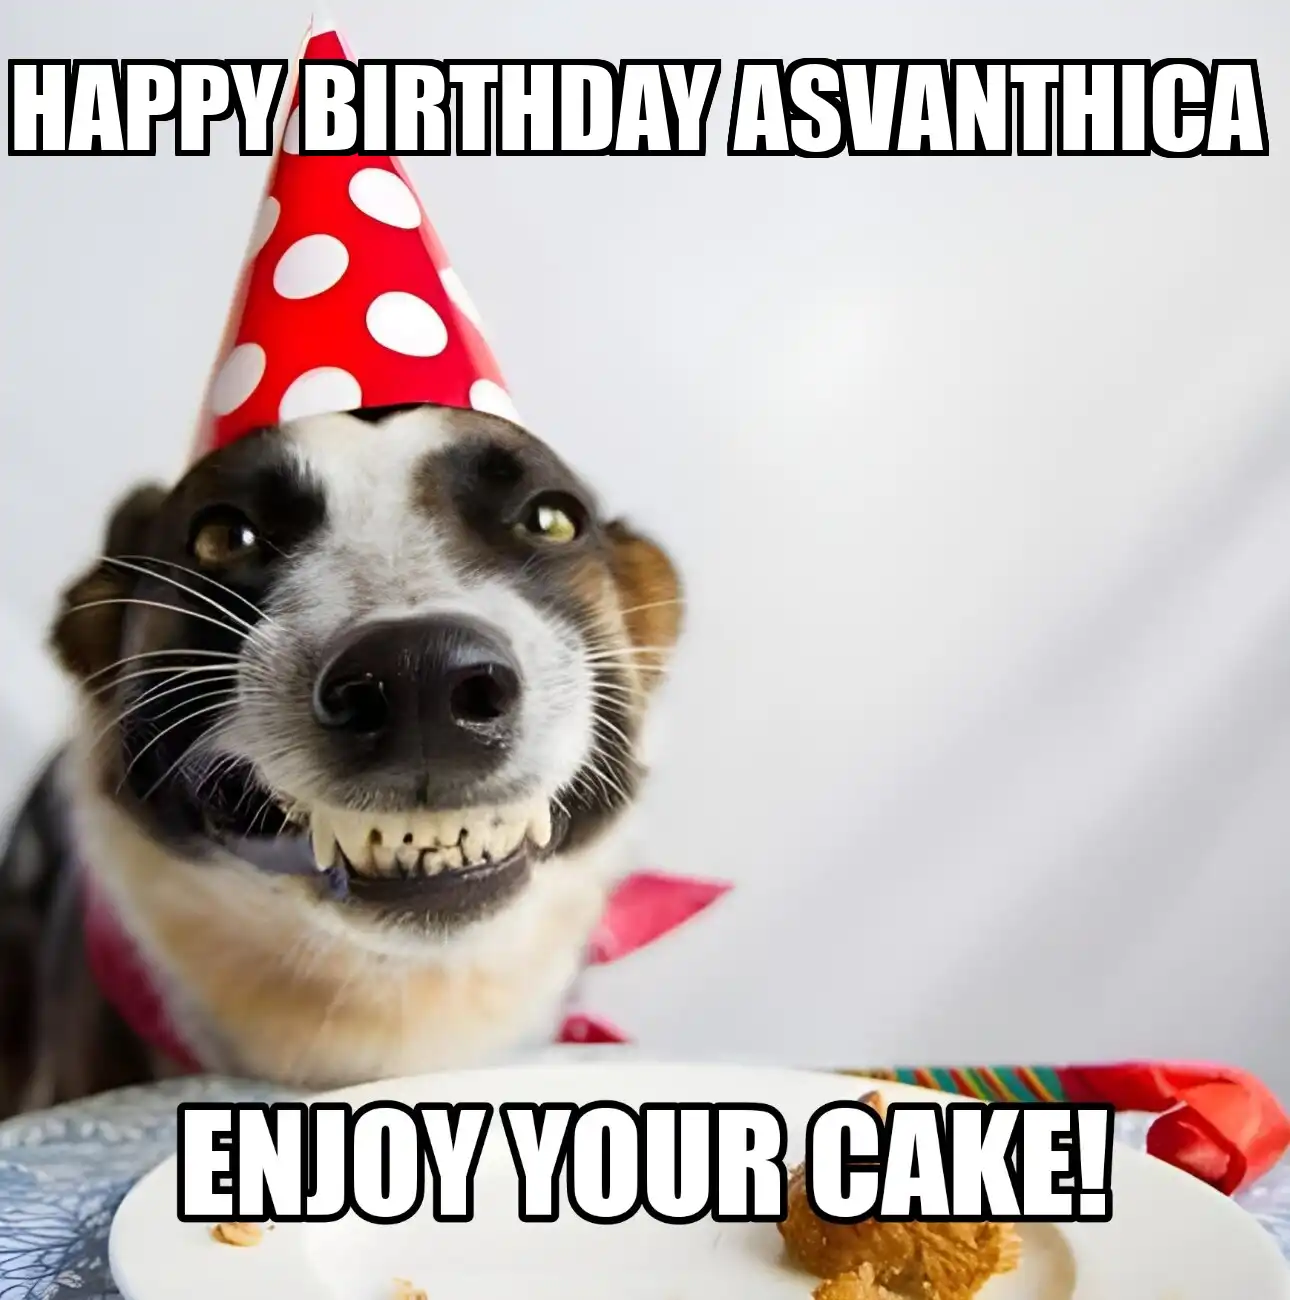 Happy Birthday Asvanthica Enjoy Your Cake Dog Meme